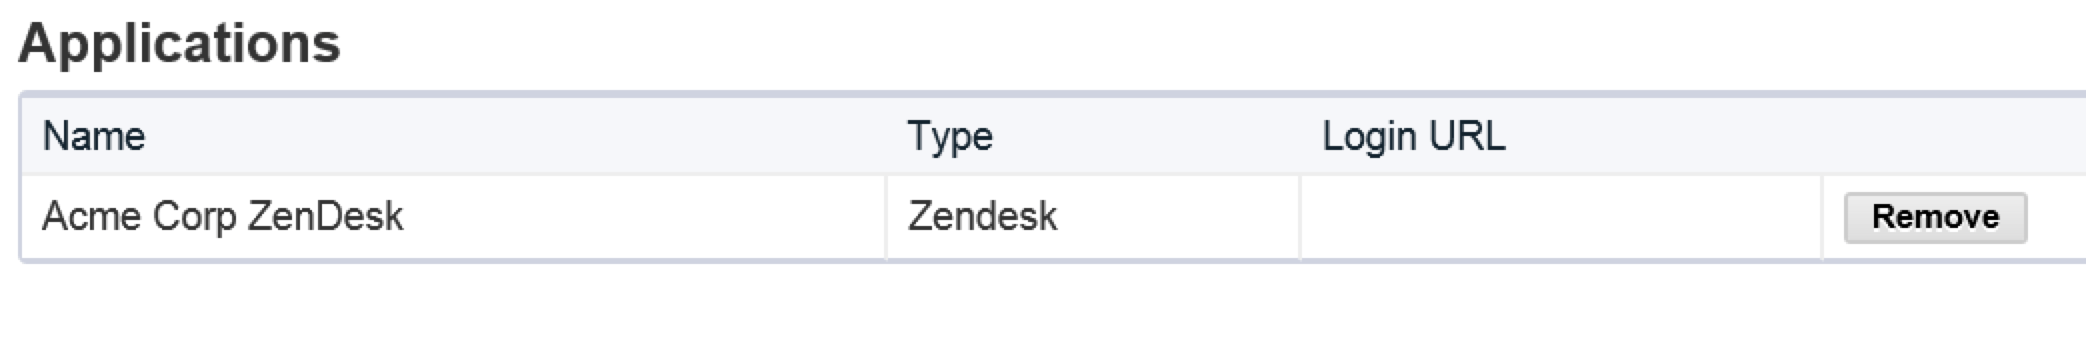 Zendesk Application Added